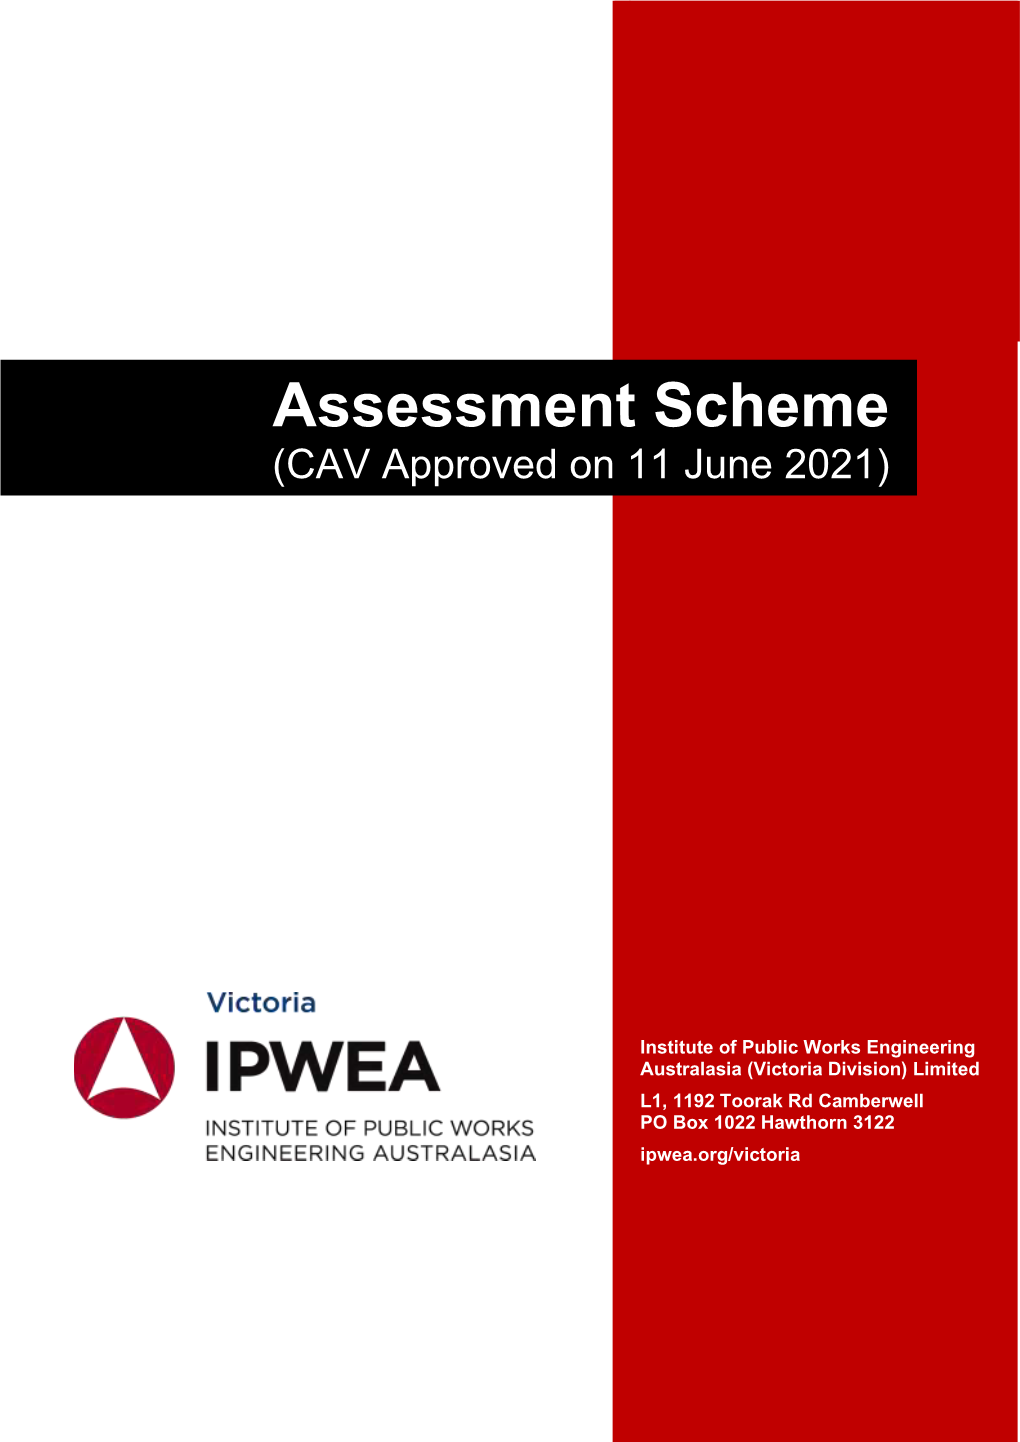 Assessment Scheme (CAV Approved on 11 June 2021)